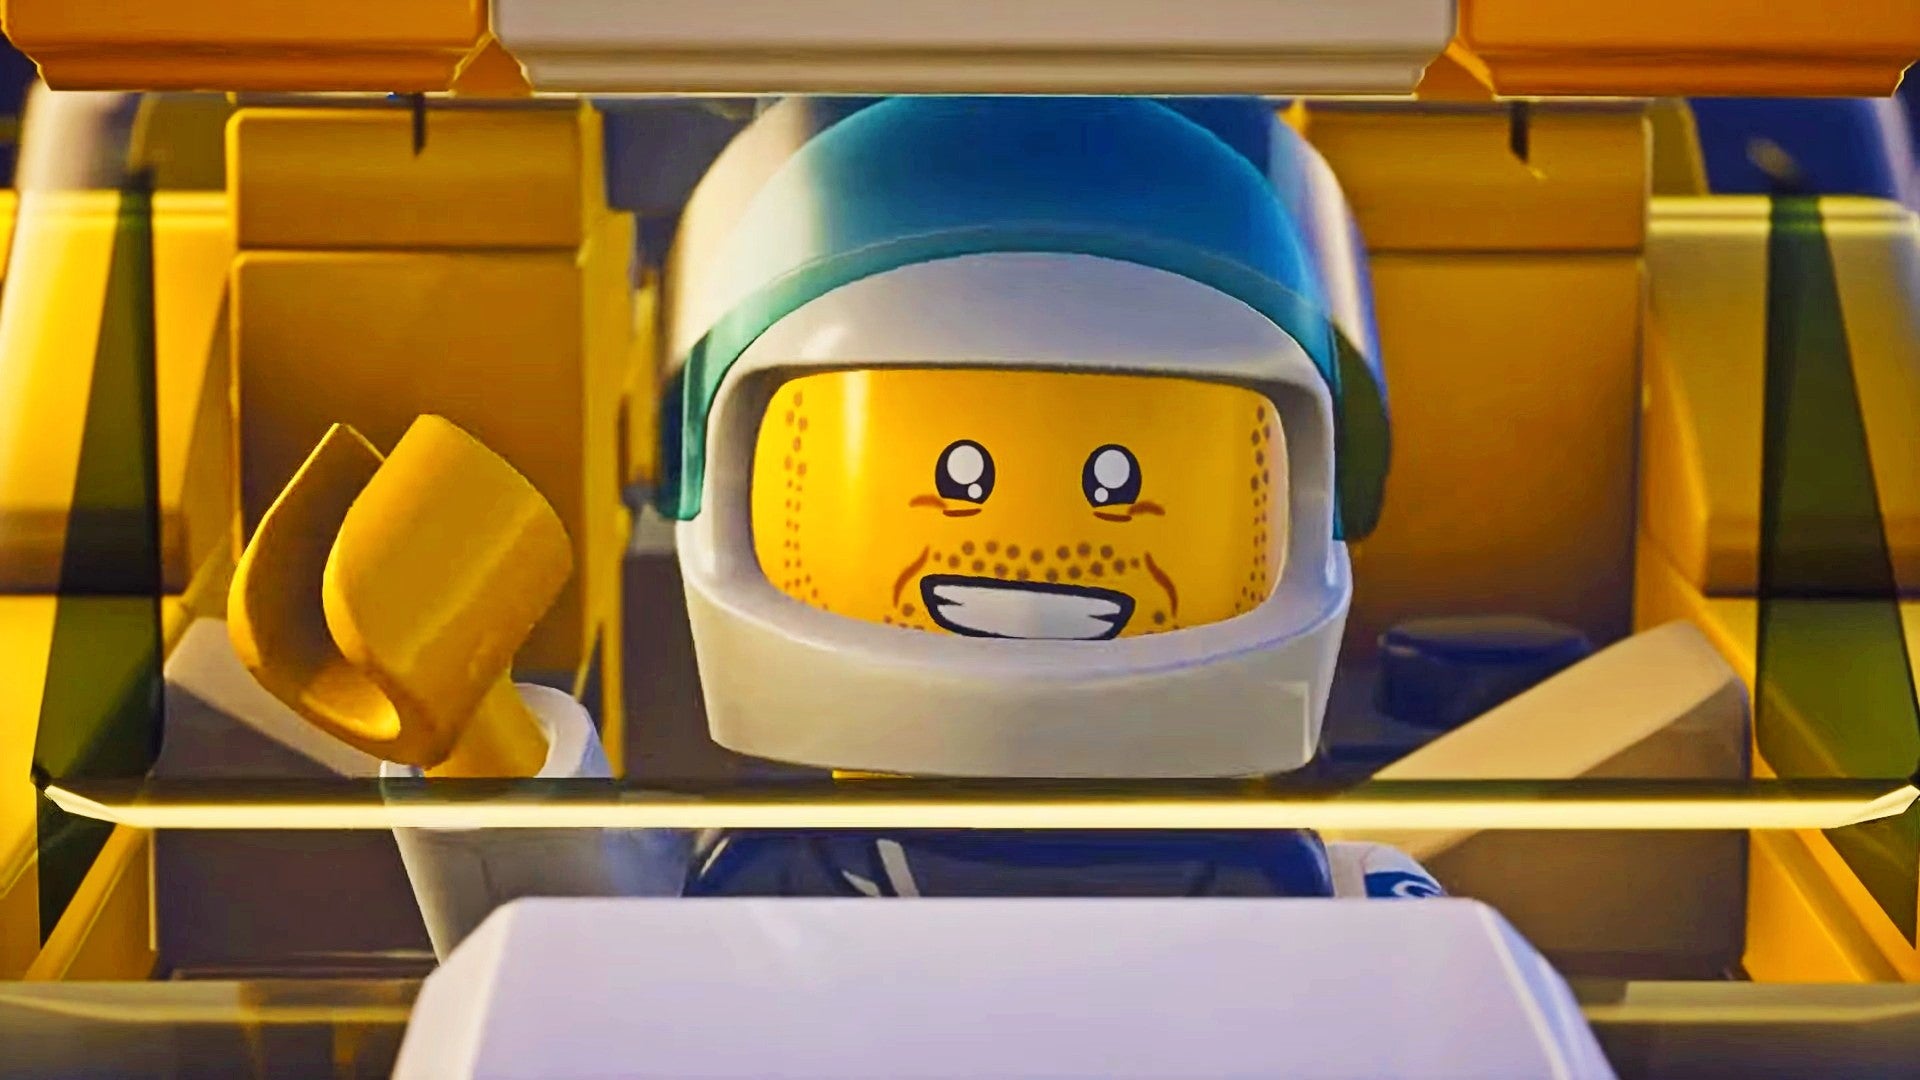 Bilder zu Lego 2K Drive kommt im Mai: Baut eure Rennautos und lasst die Bauklötze fliegen